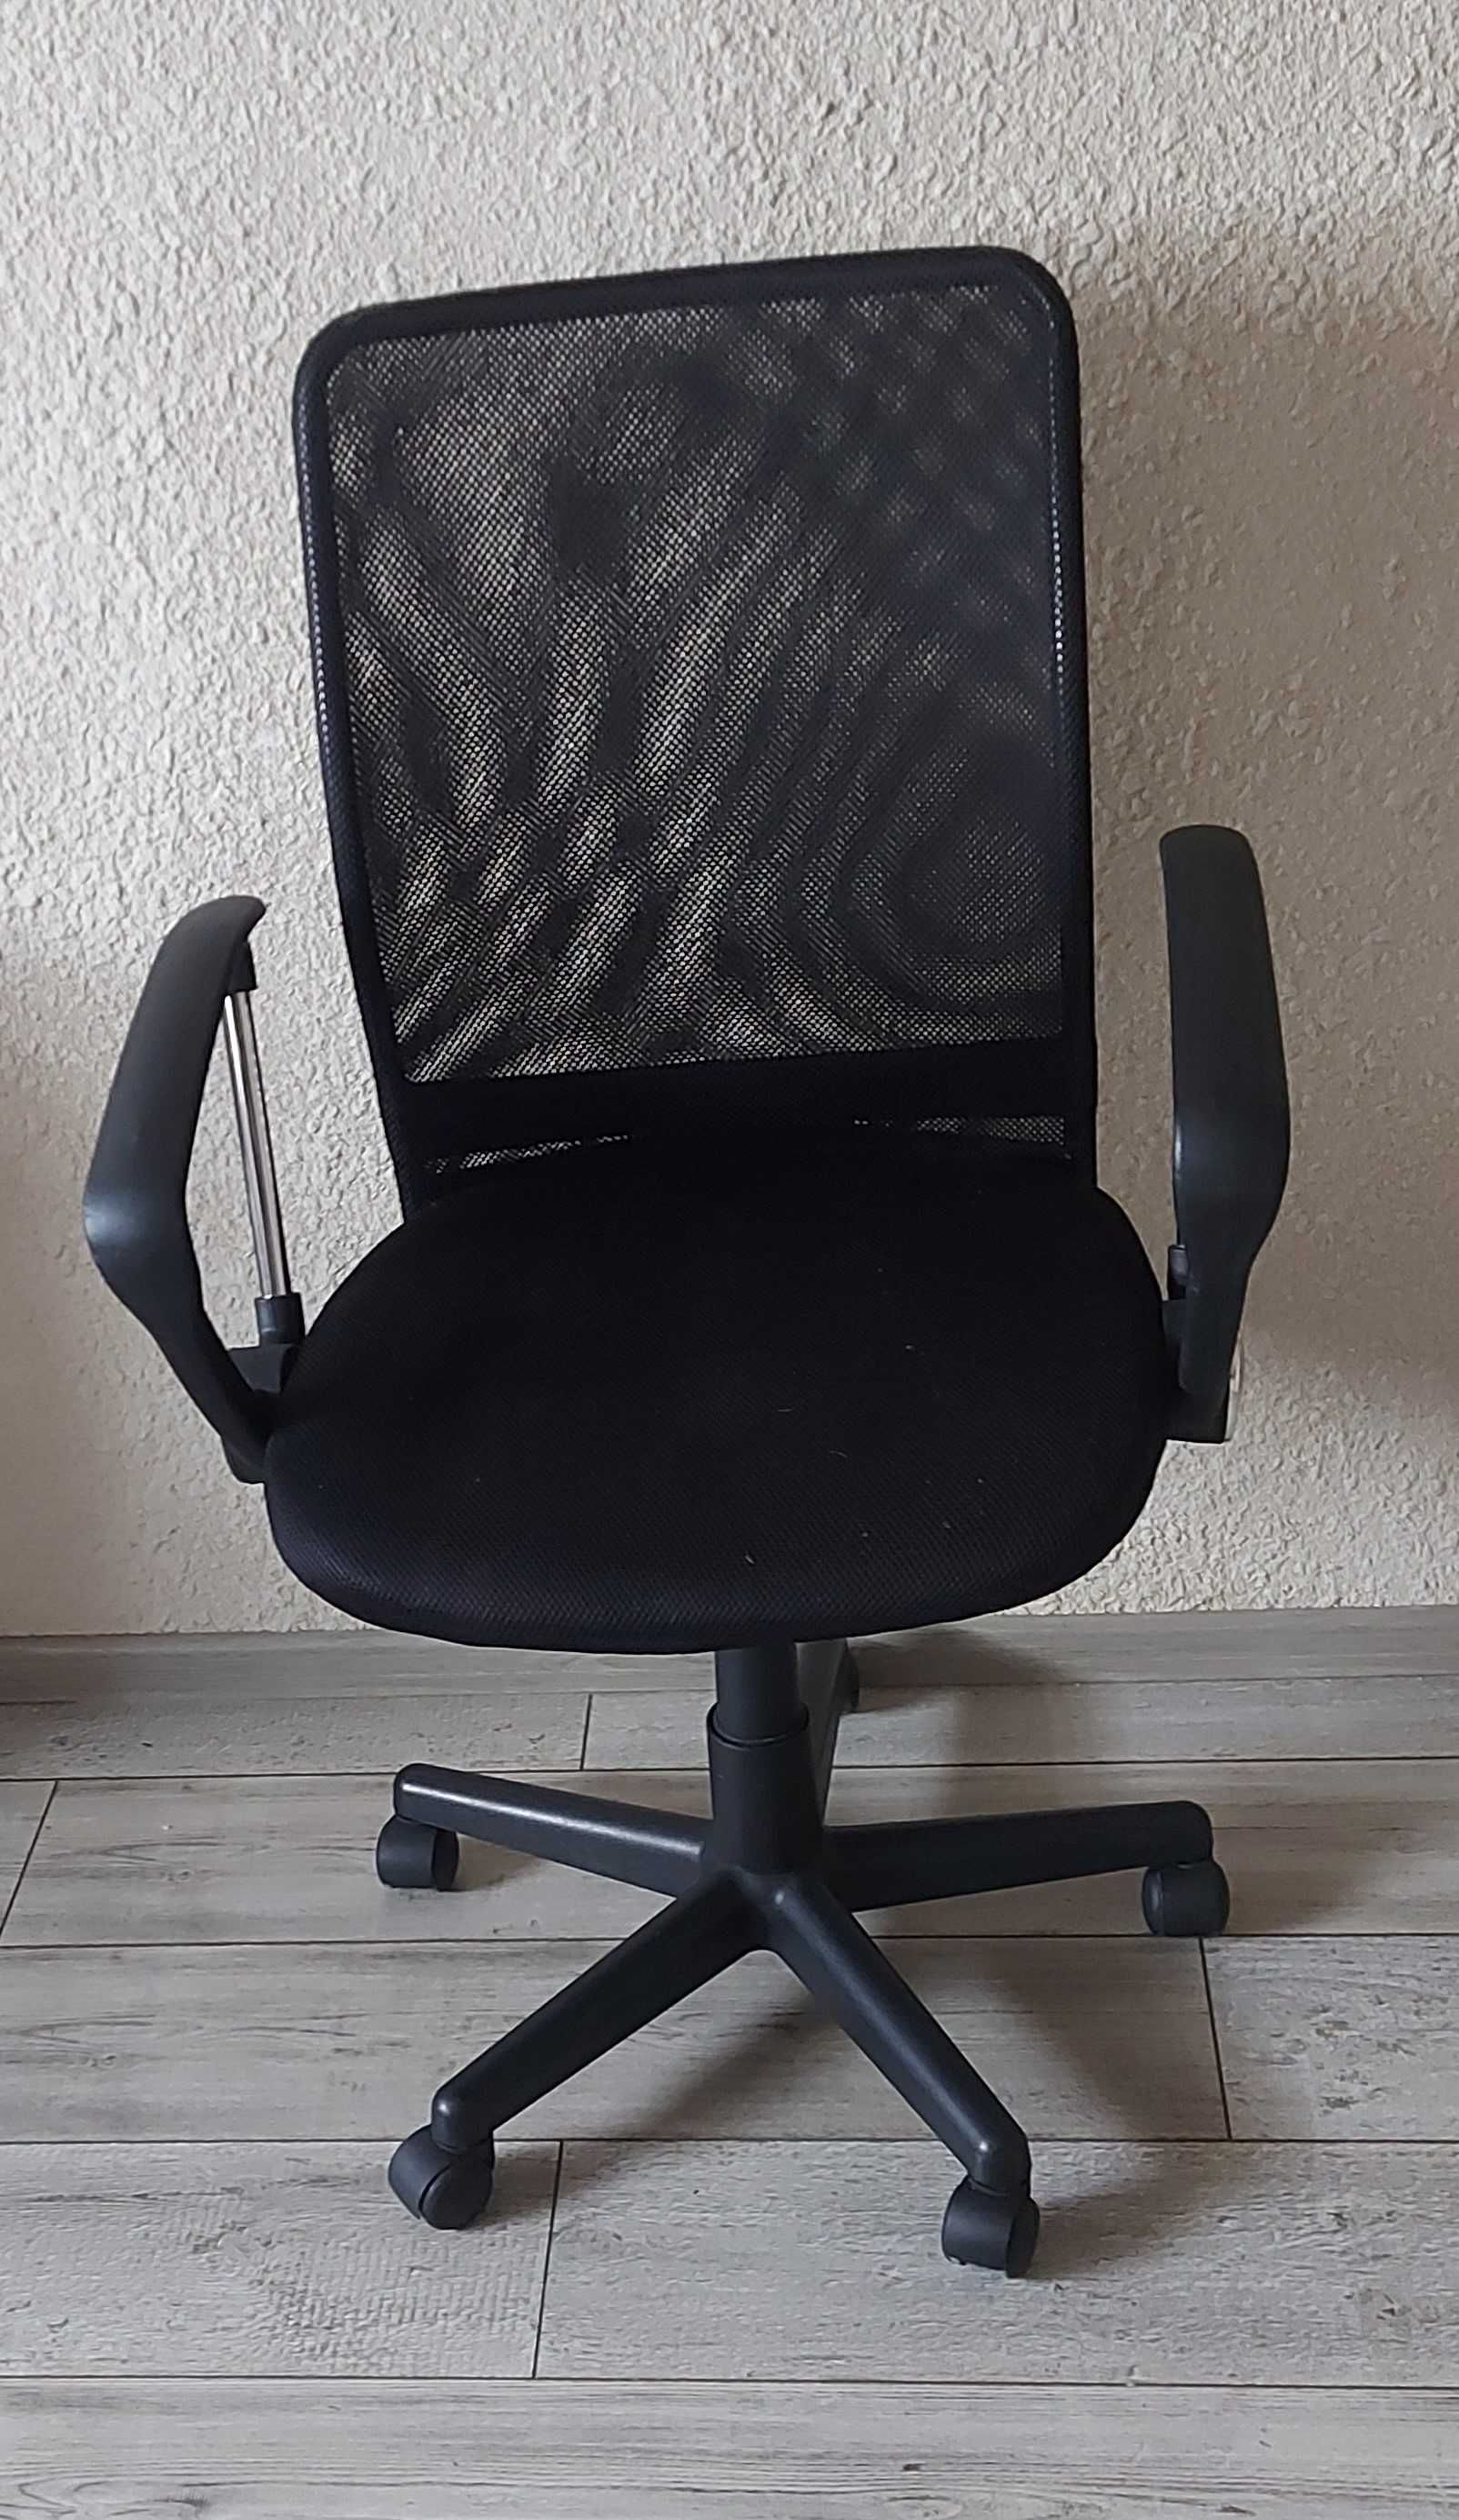 Krzesło czarne na kółkach obracające się